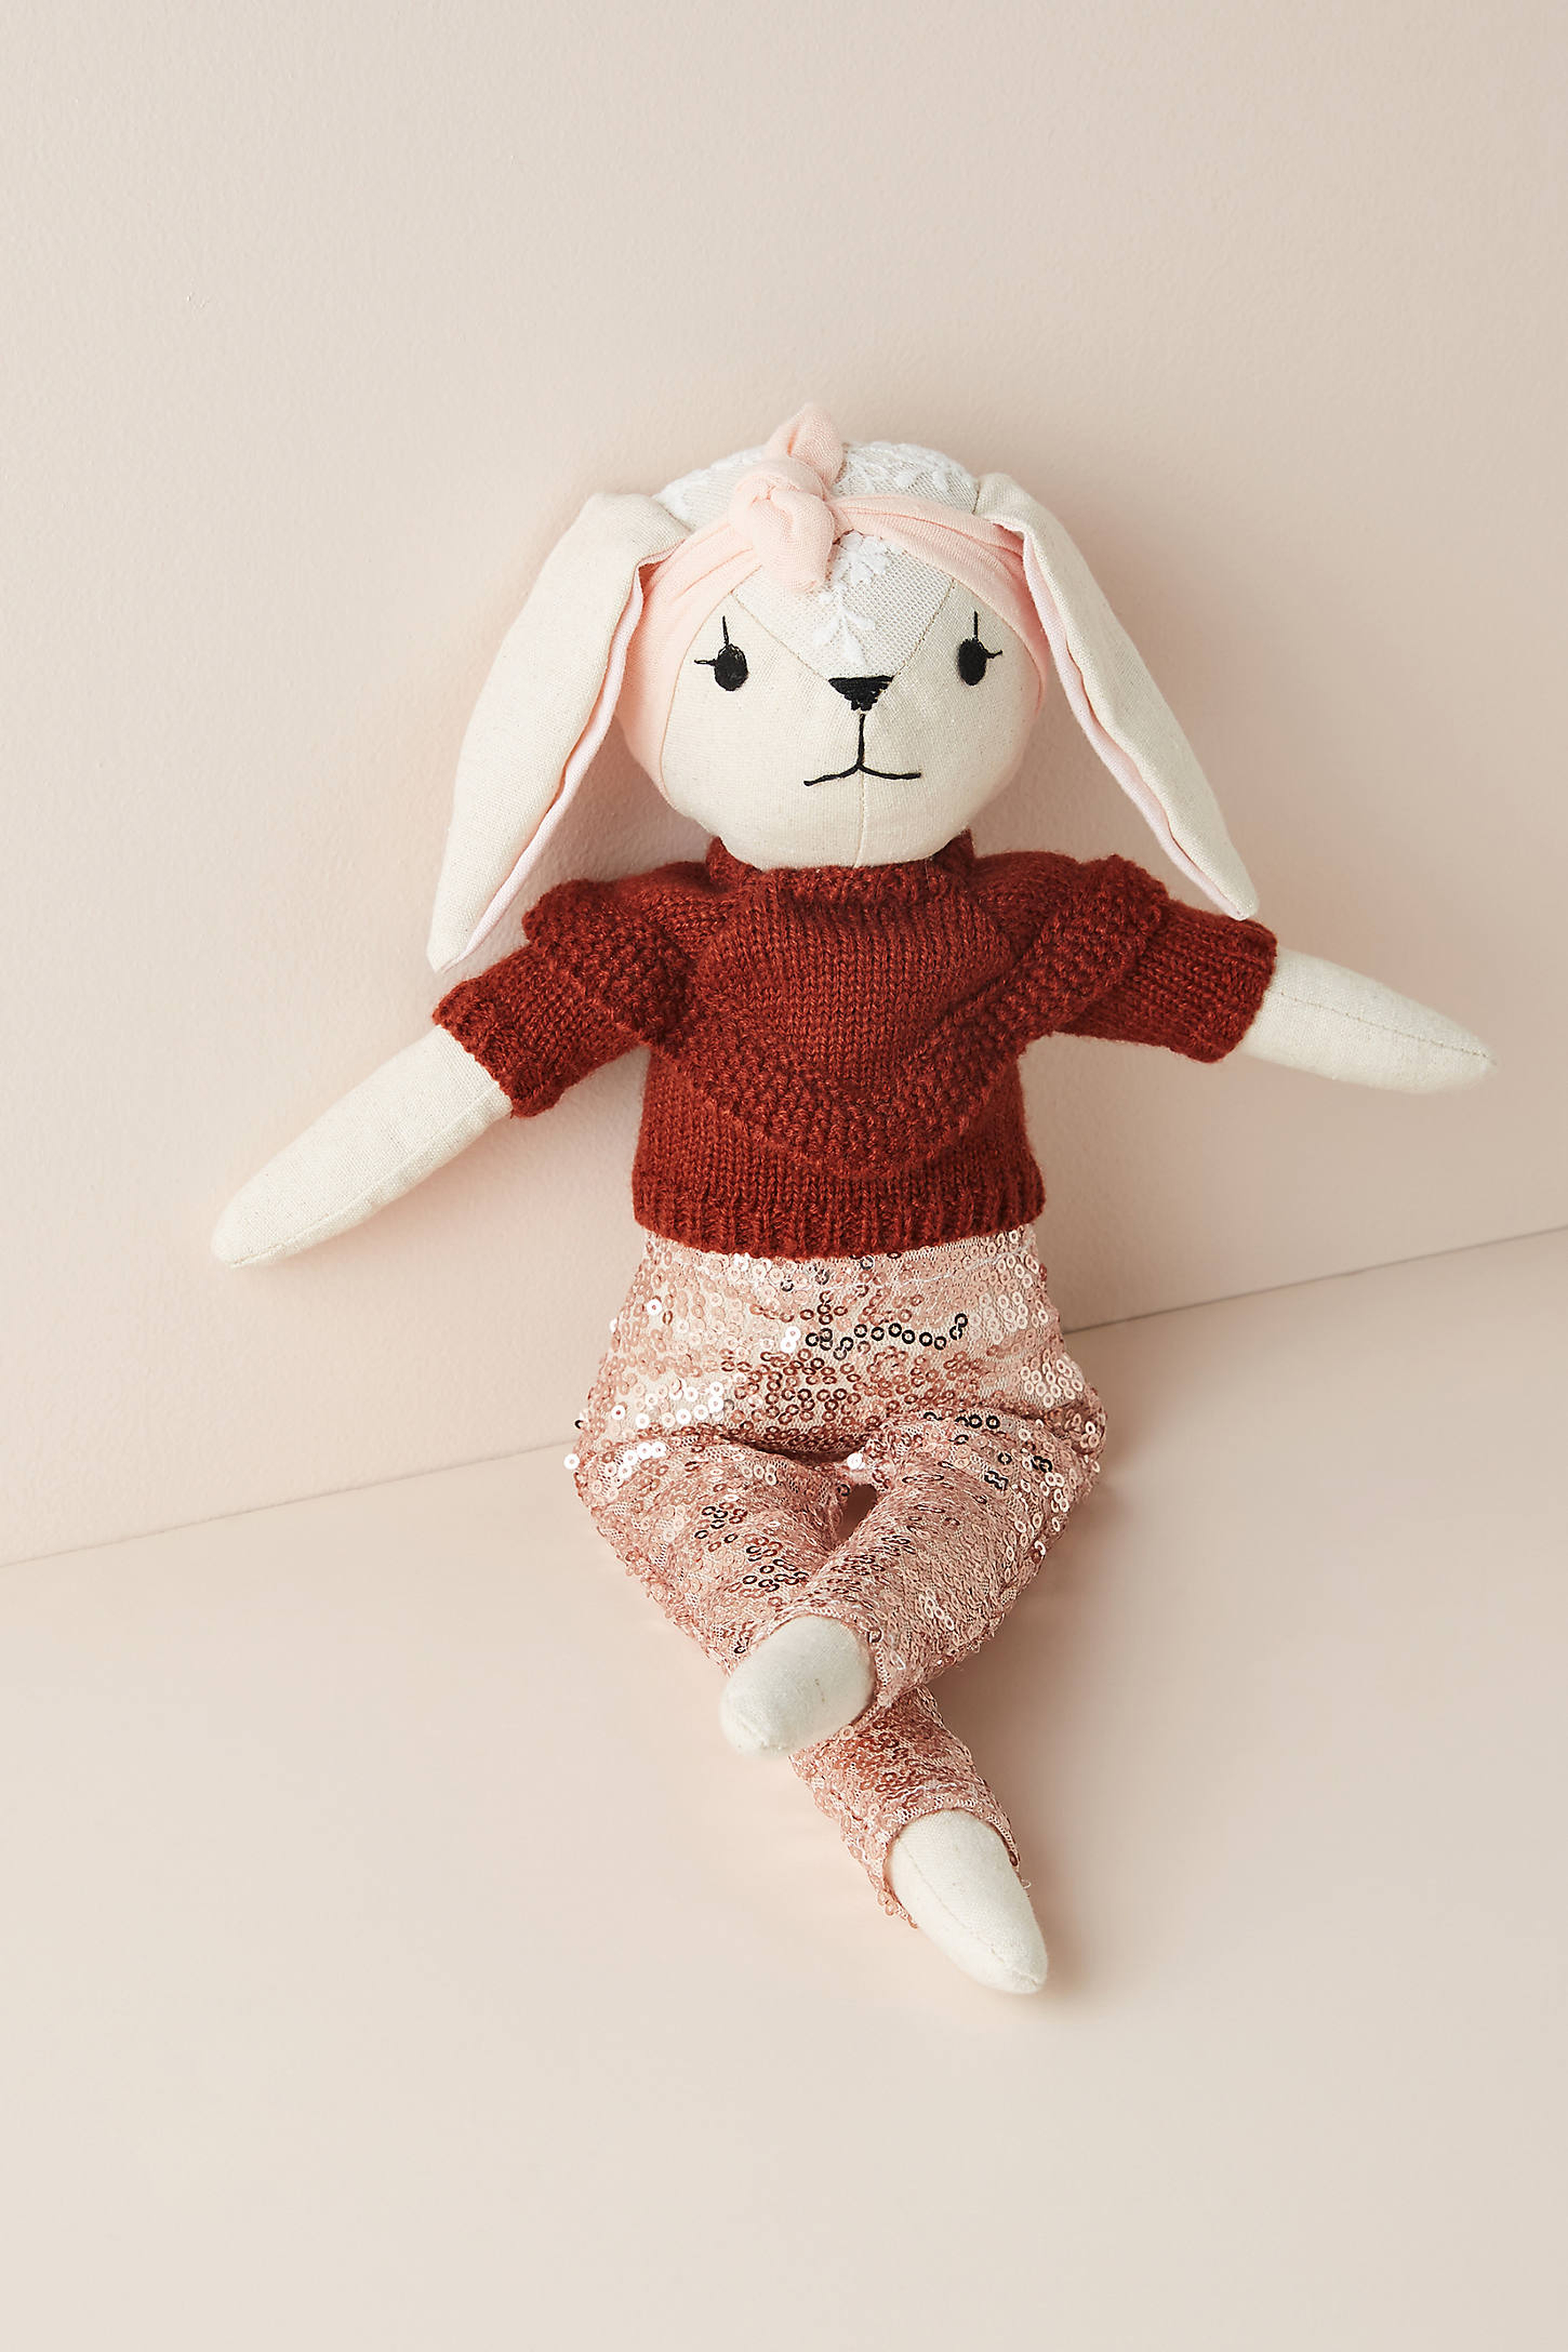 Wonderforest Girls Stuffed Animal - Rabbit - Anthropologie